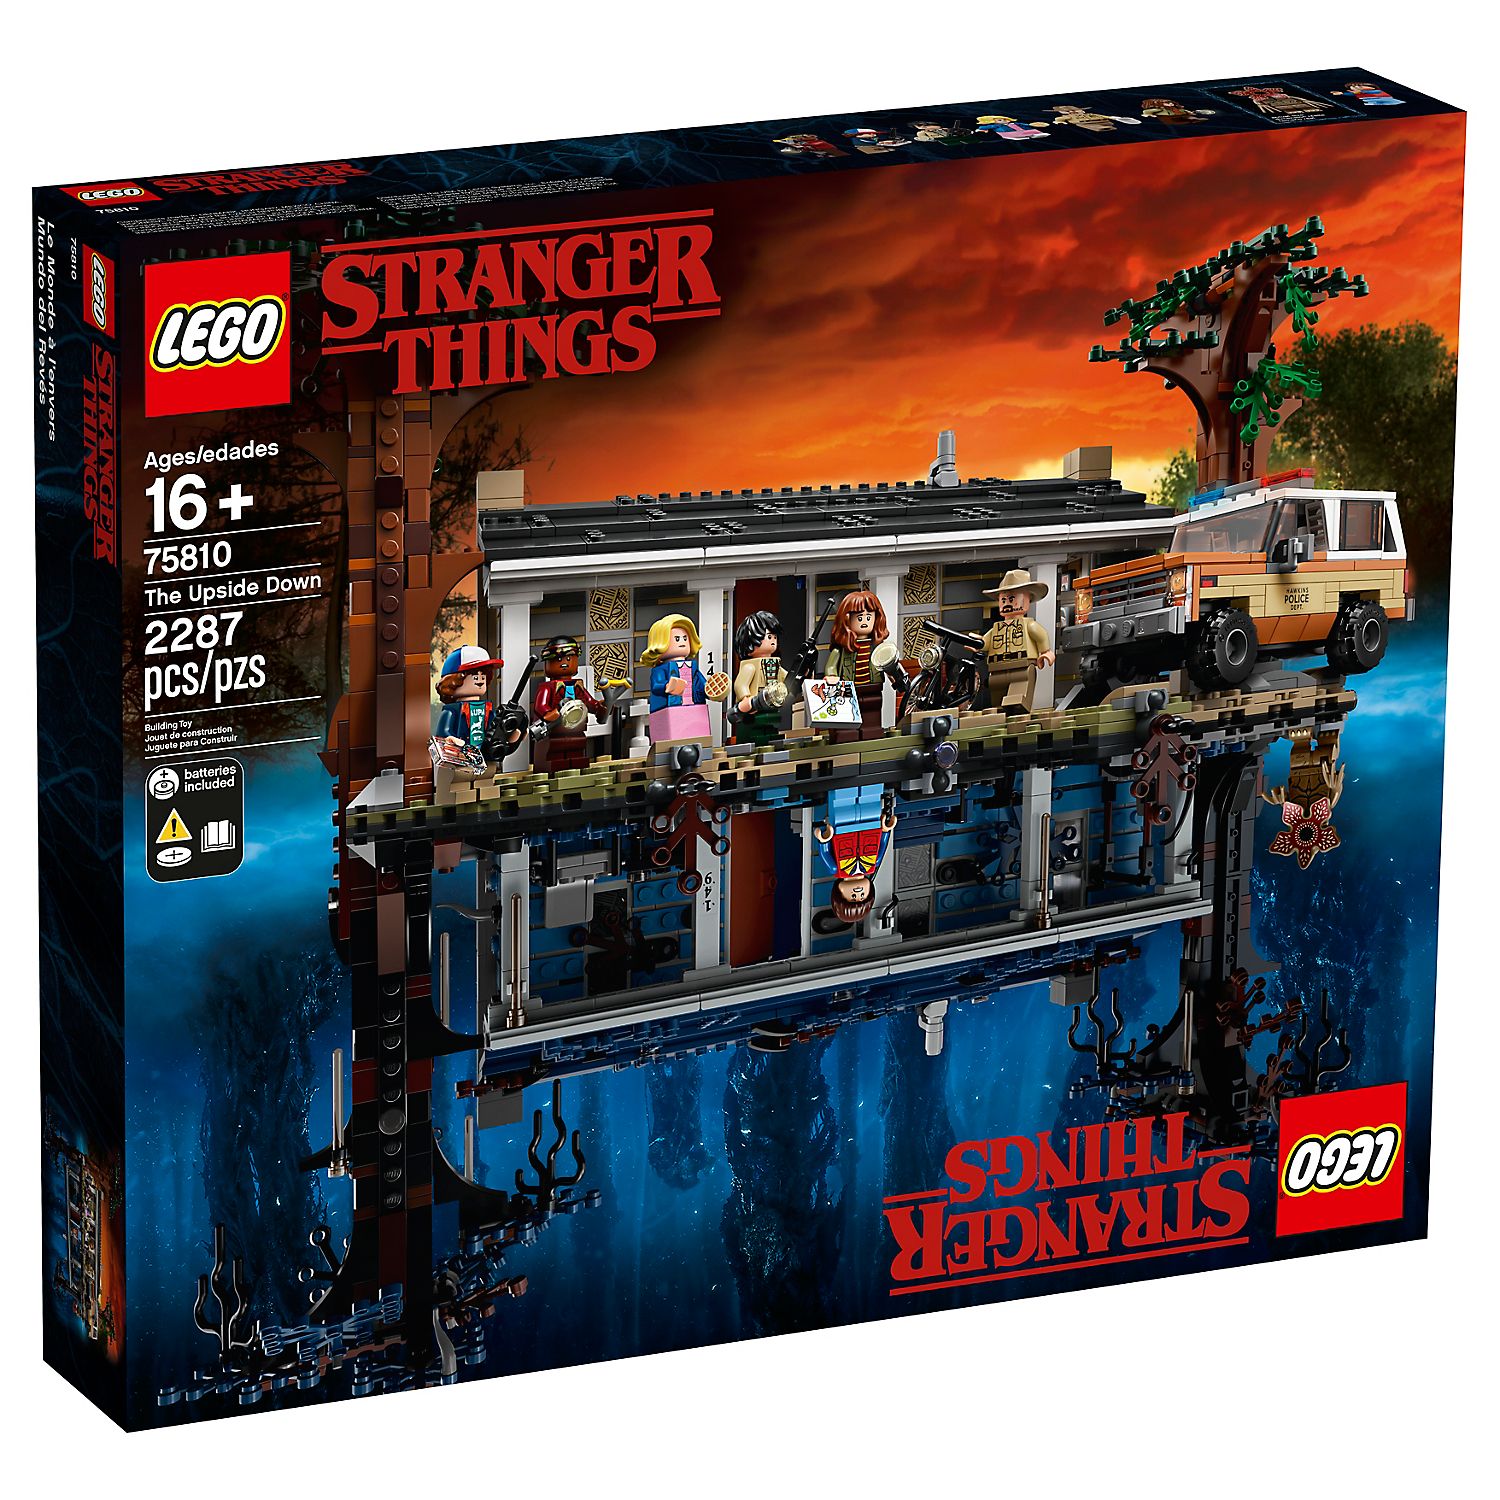 Stranger Things Lego